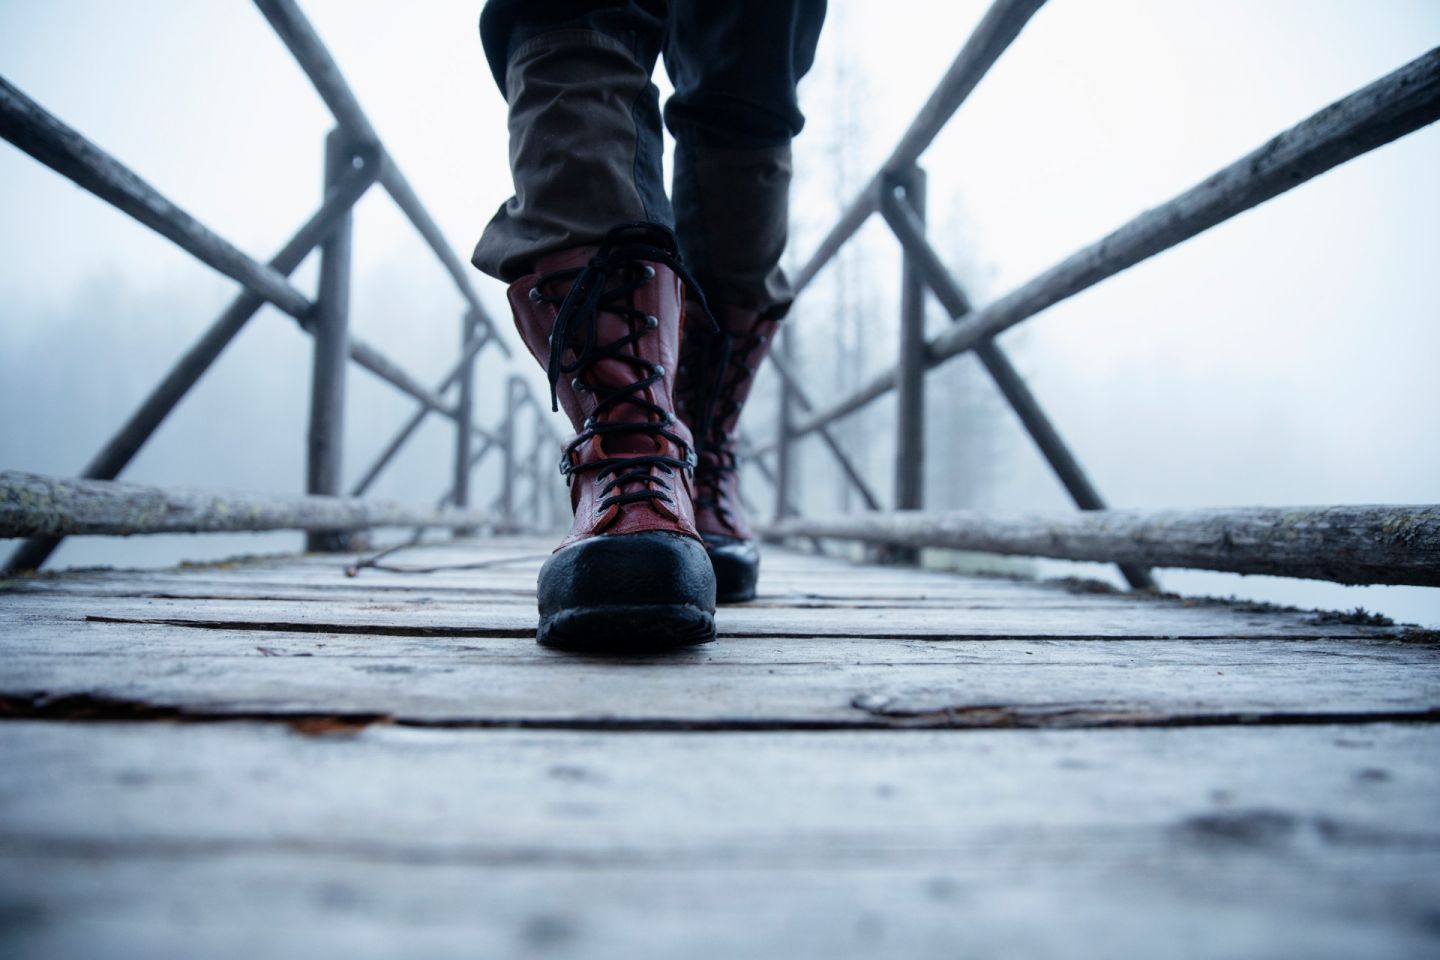 Walking across a wooden footbridge in Finnish Lapland